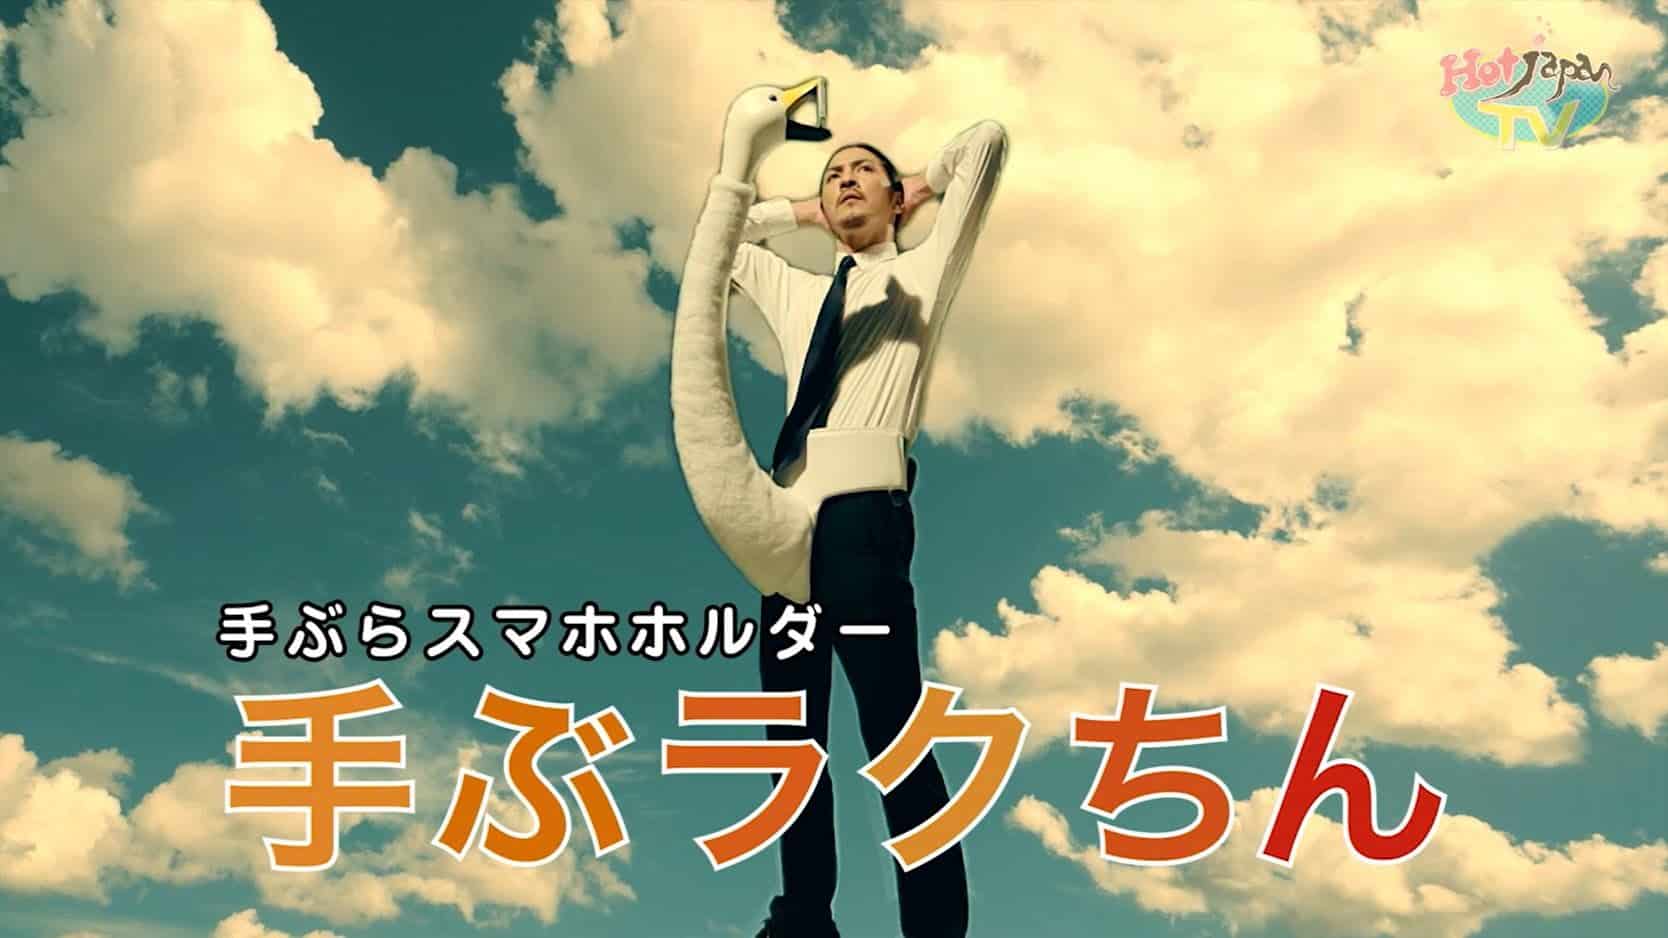 Japansk svanehalsholder fra mobilen